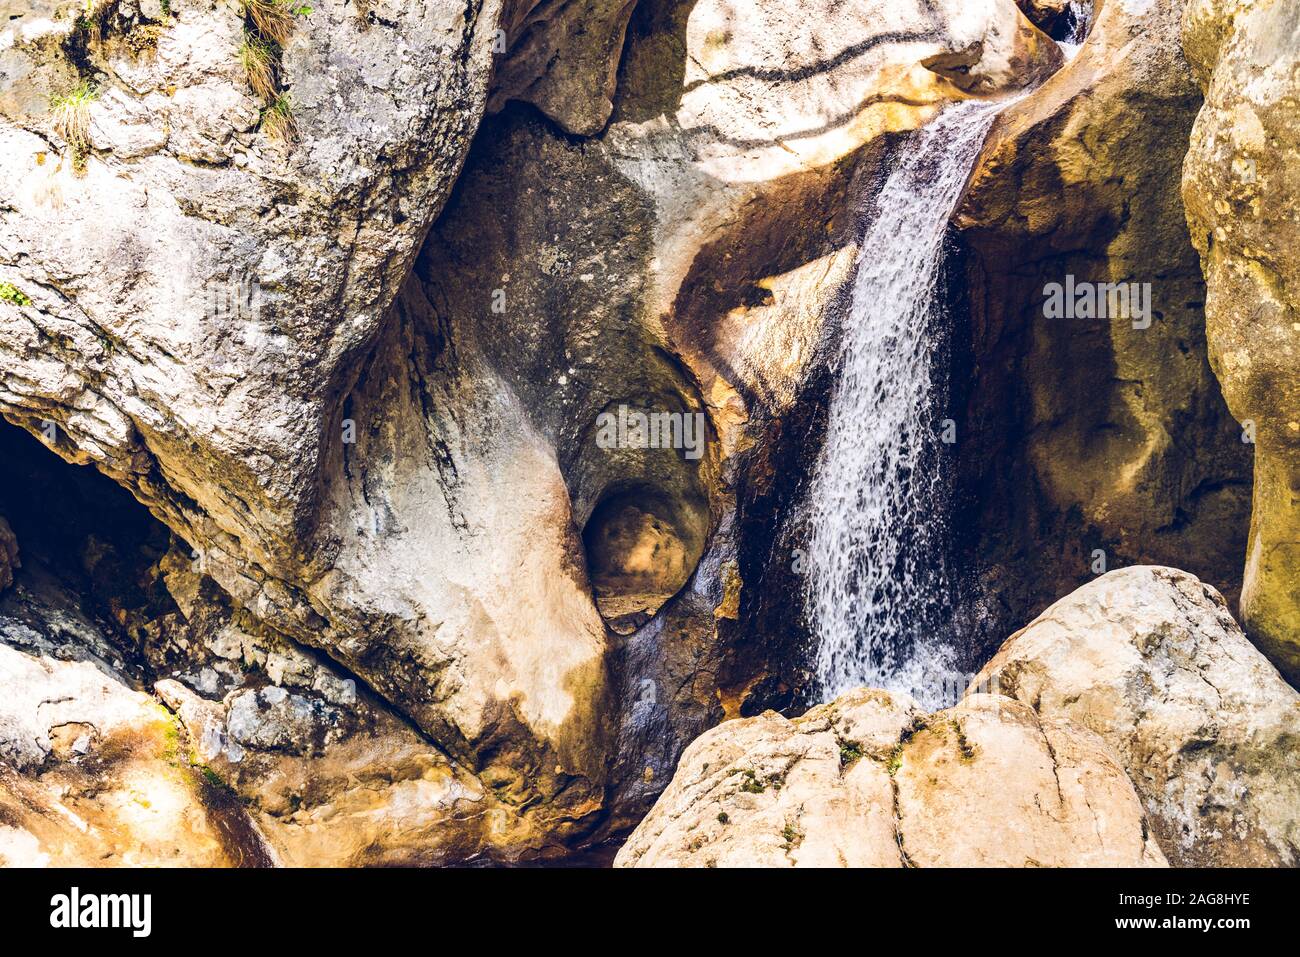 Mixnitz waterfall path along mountain stream. Tourist spot. Travel destination Stock Photo